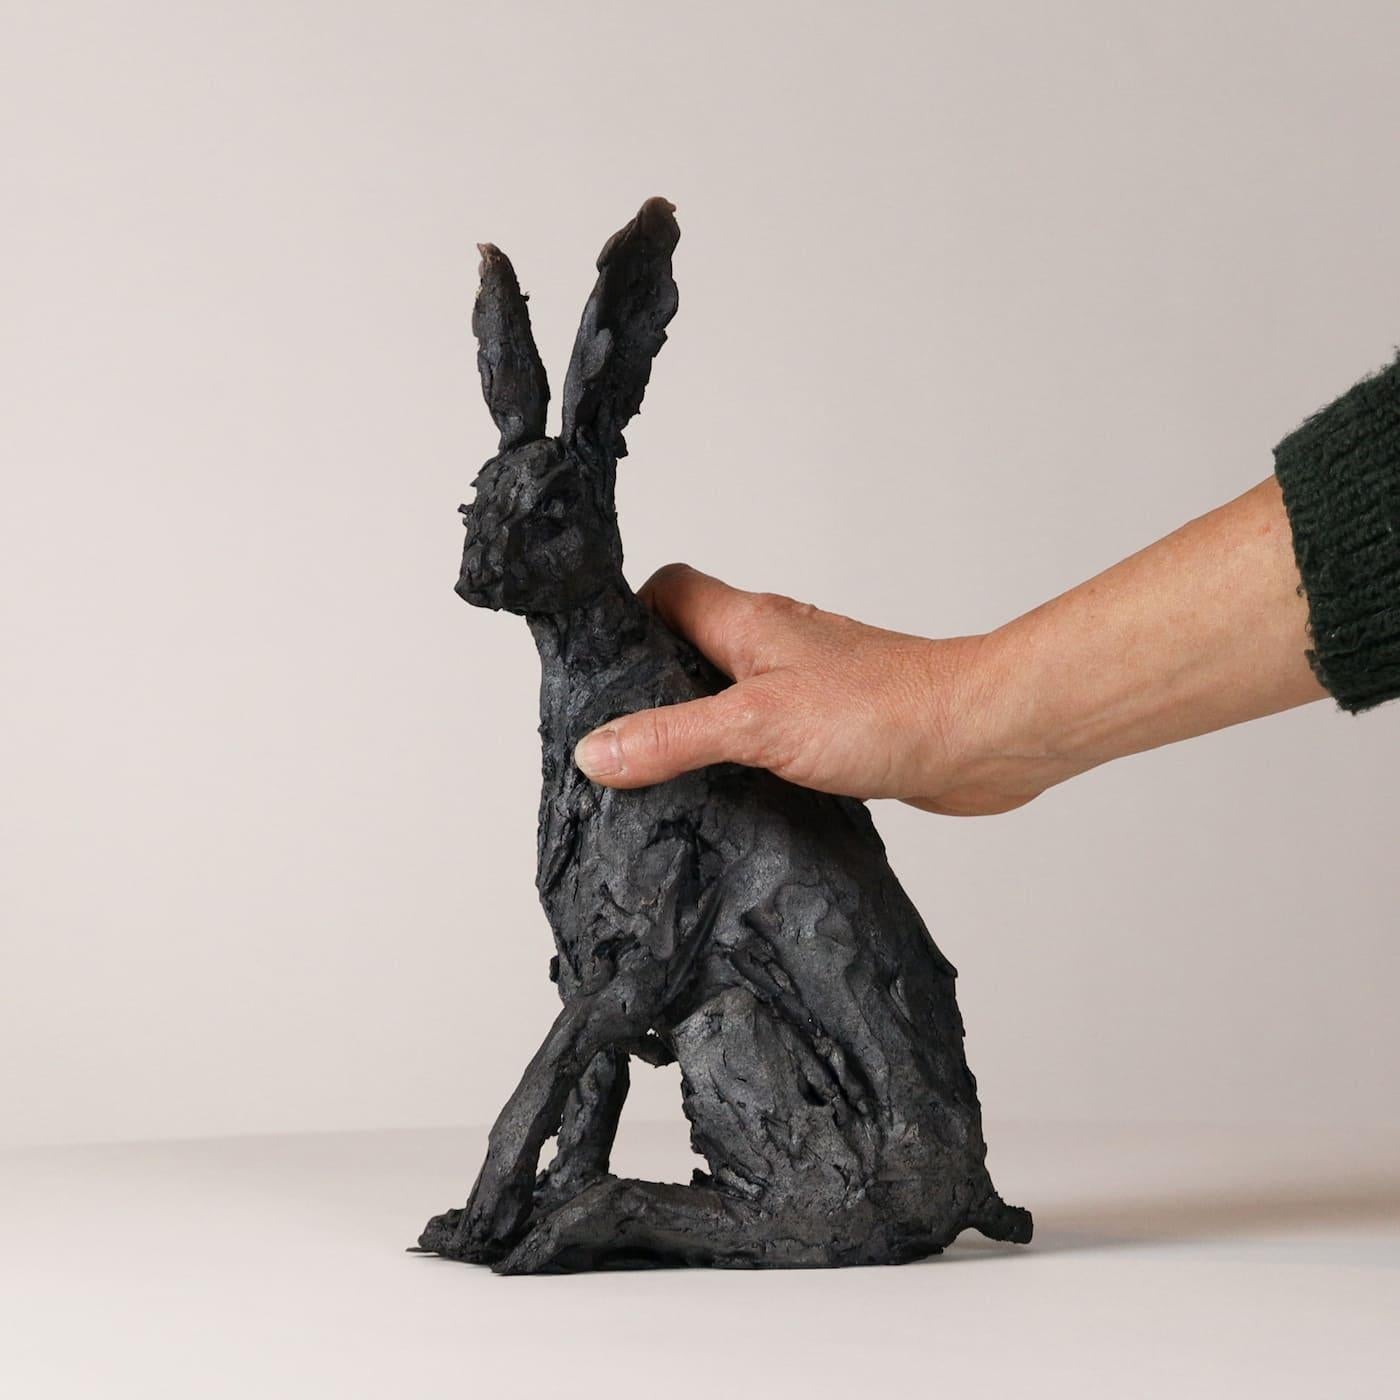 Le lièvre assis est une sculpture unique en grès enfumé de l'artiste contemporaine française Cécile Raynal. Ses dimensions sont de 32,5 × 20 × 10 cm (12,8 × 7,9 × 3,9 in). 

Cette œuvre d'art représente un lièvre vigilant et actif. Cependant,